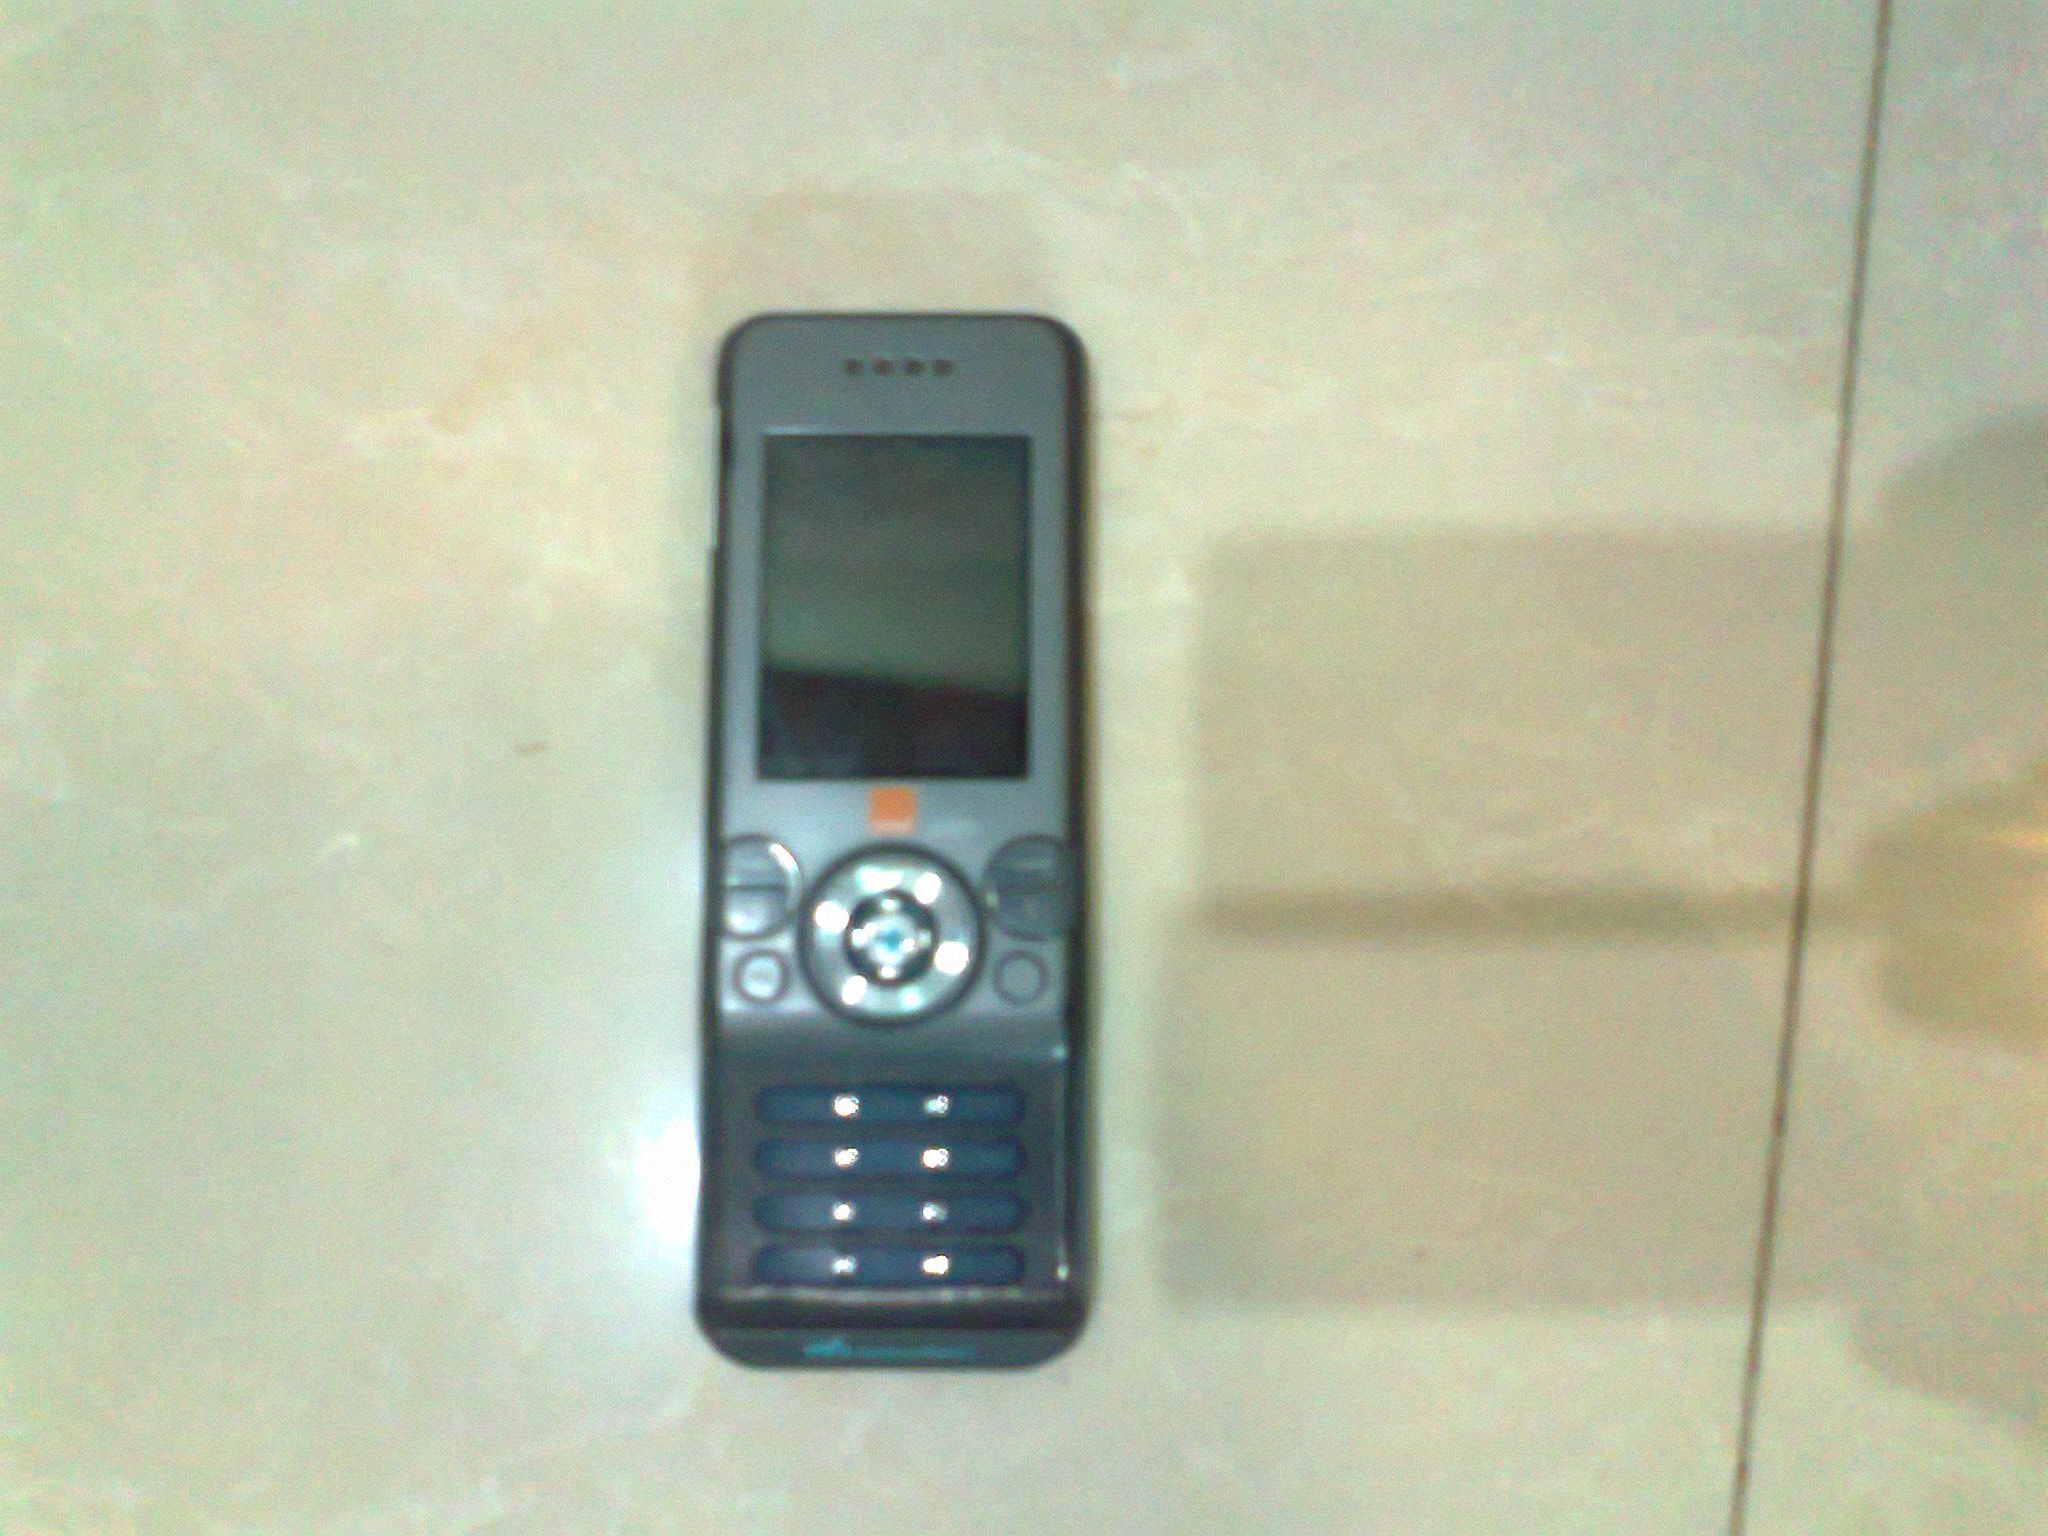 Sony Ericsson W-580i for exchange large image 0